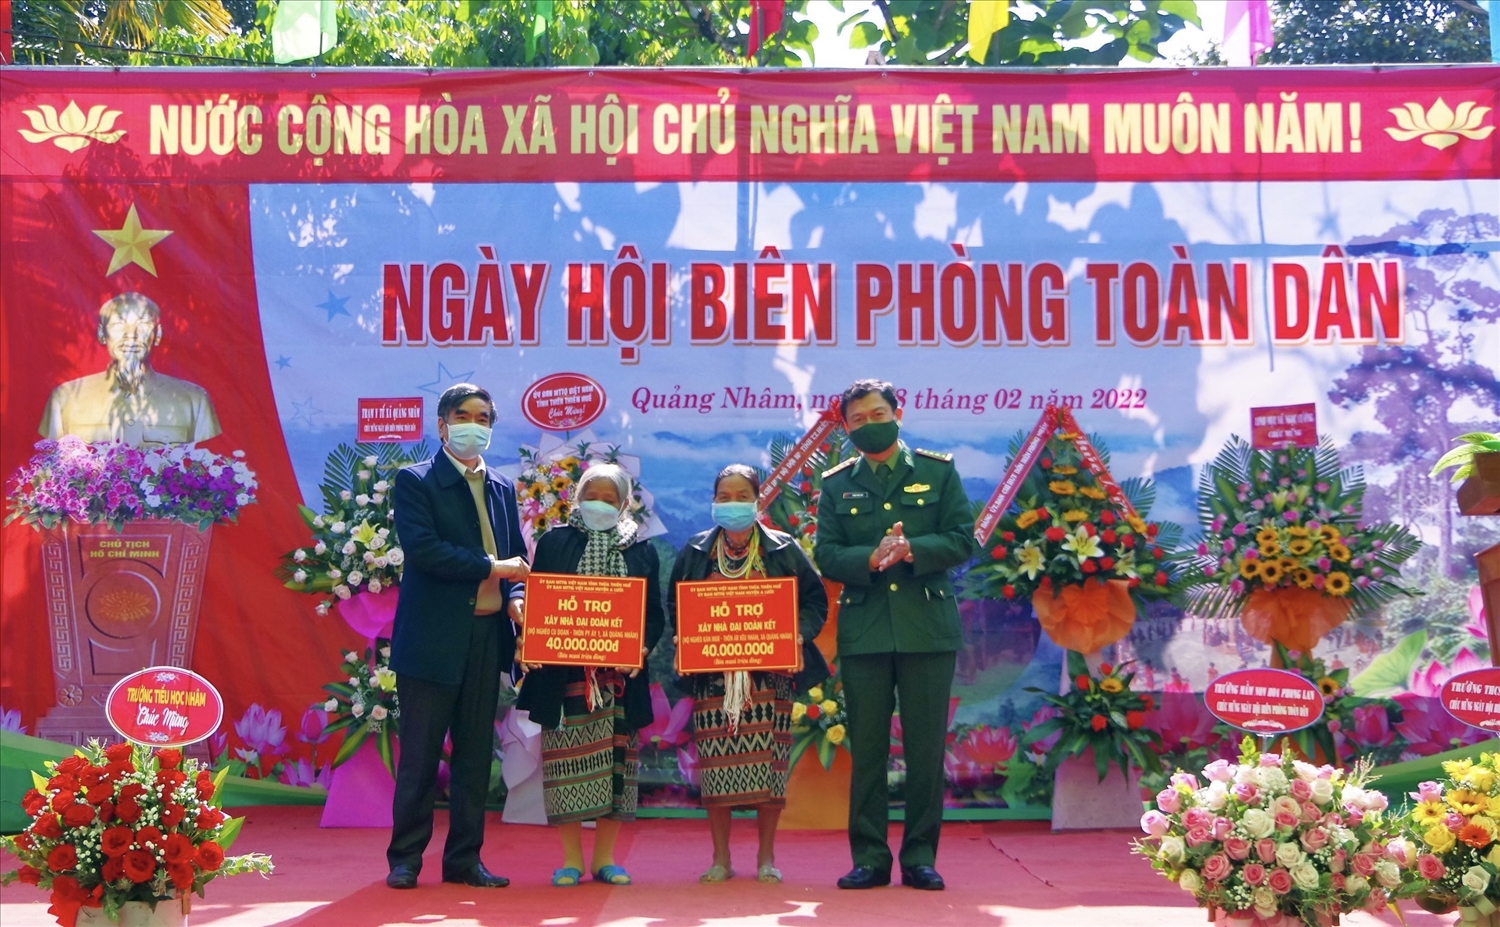 Đại diện Bộ Chỉ huy BĐBP tỉnh và Ủy ban MTTQ Việt Nam tỉnh trao tiền hỗ trợ xây dựng nhà “Đại đoàn kết” cho các hộ gia đình